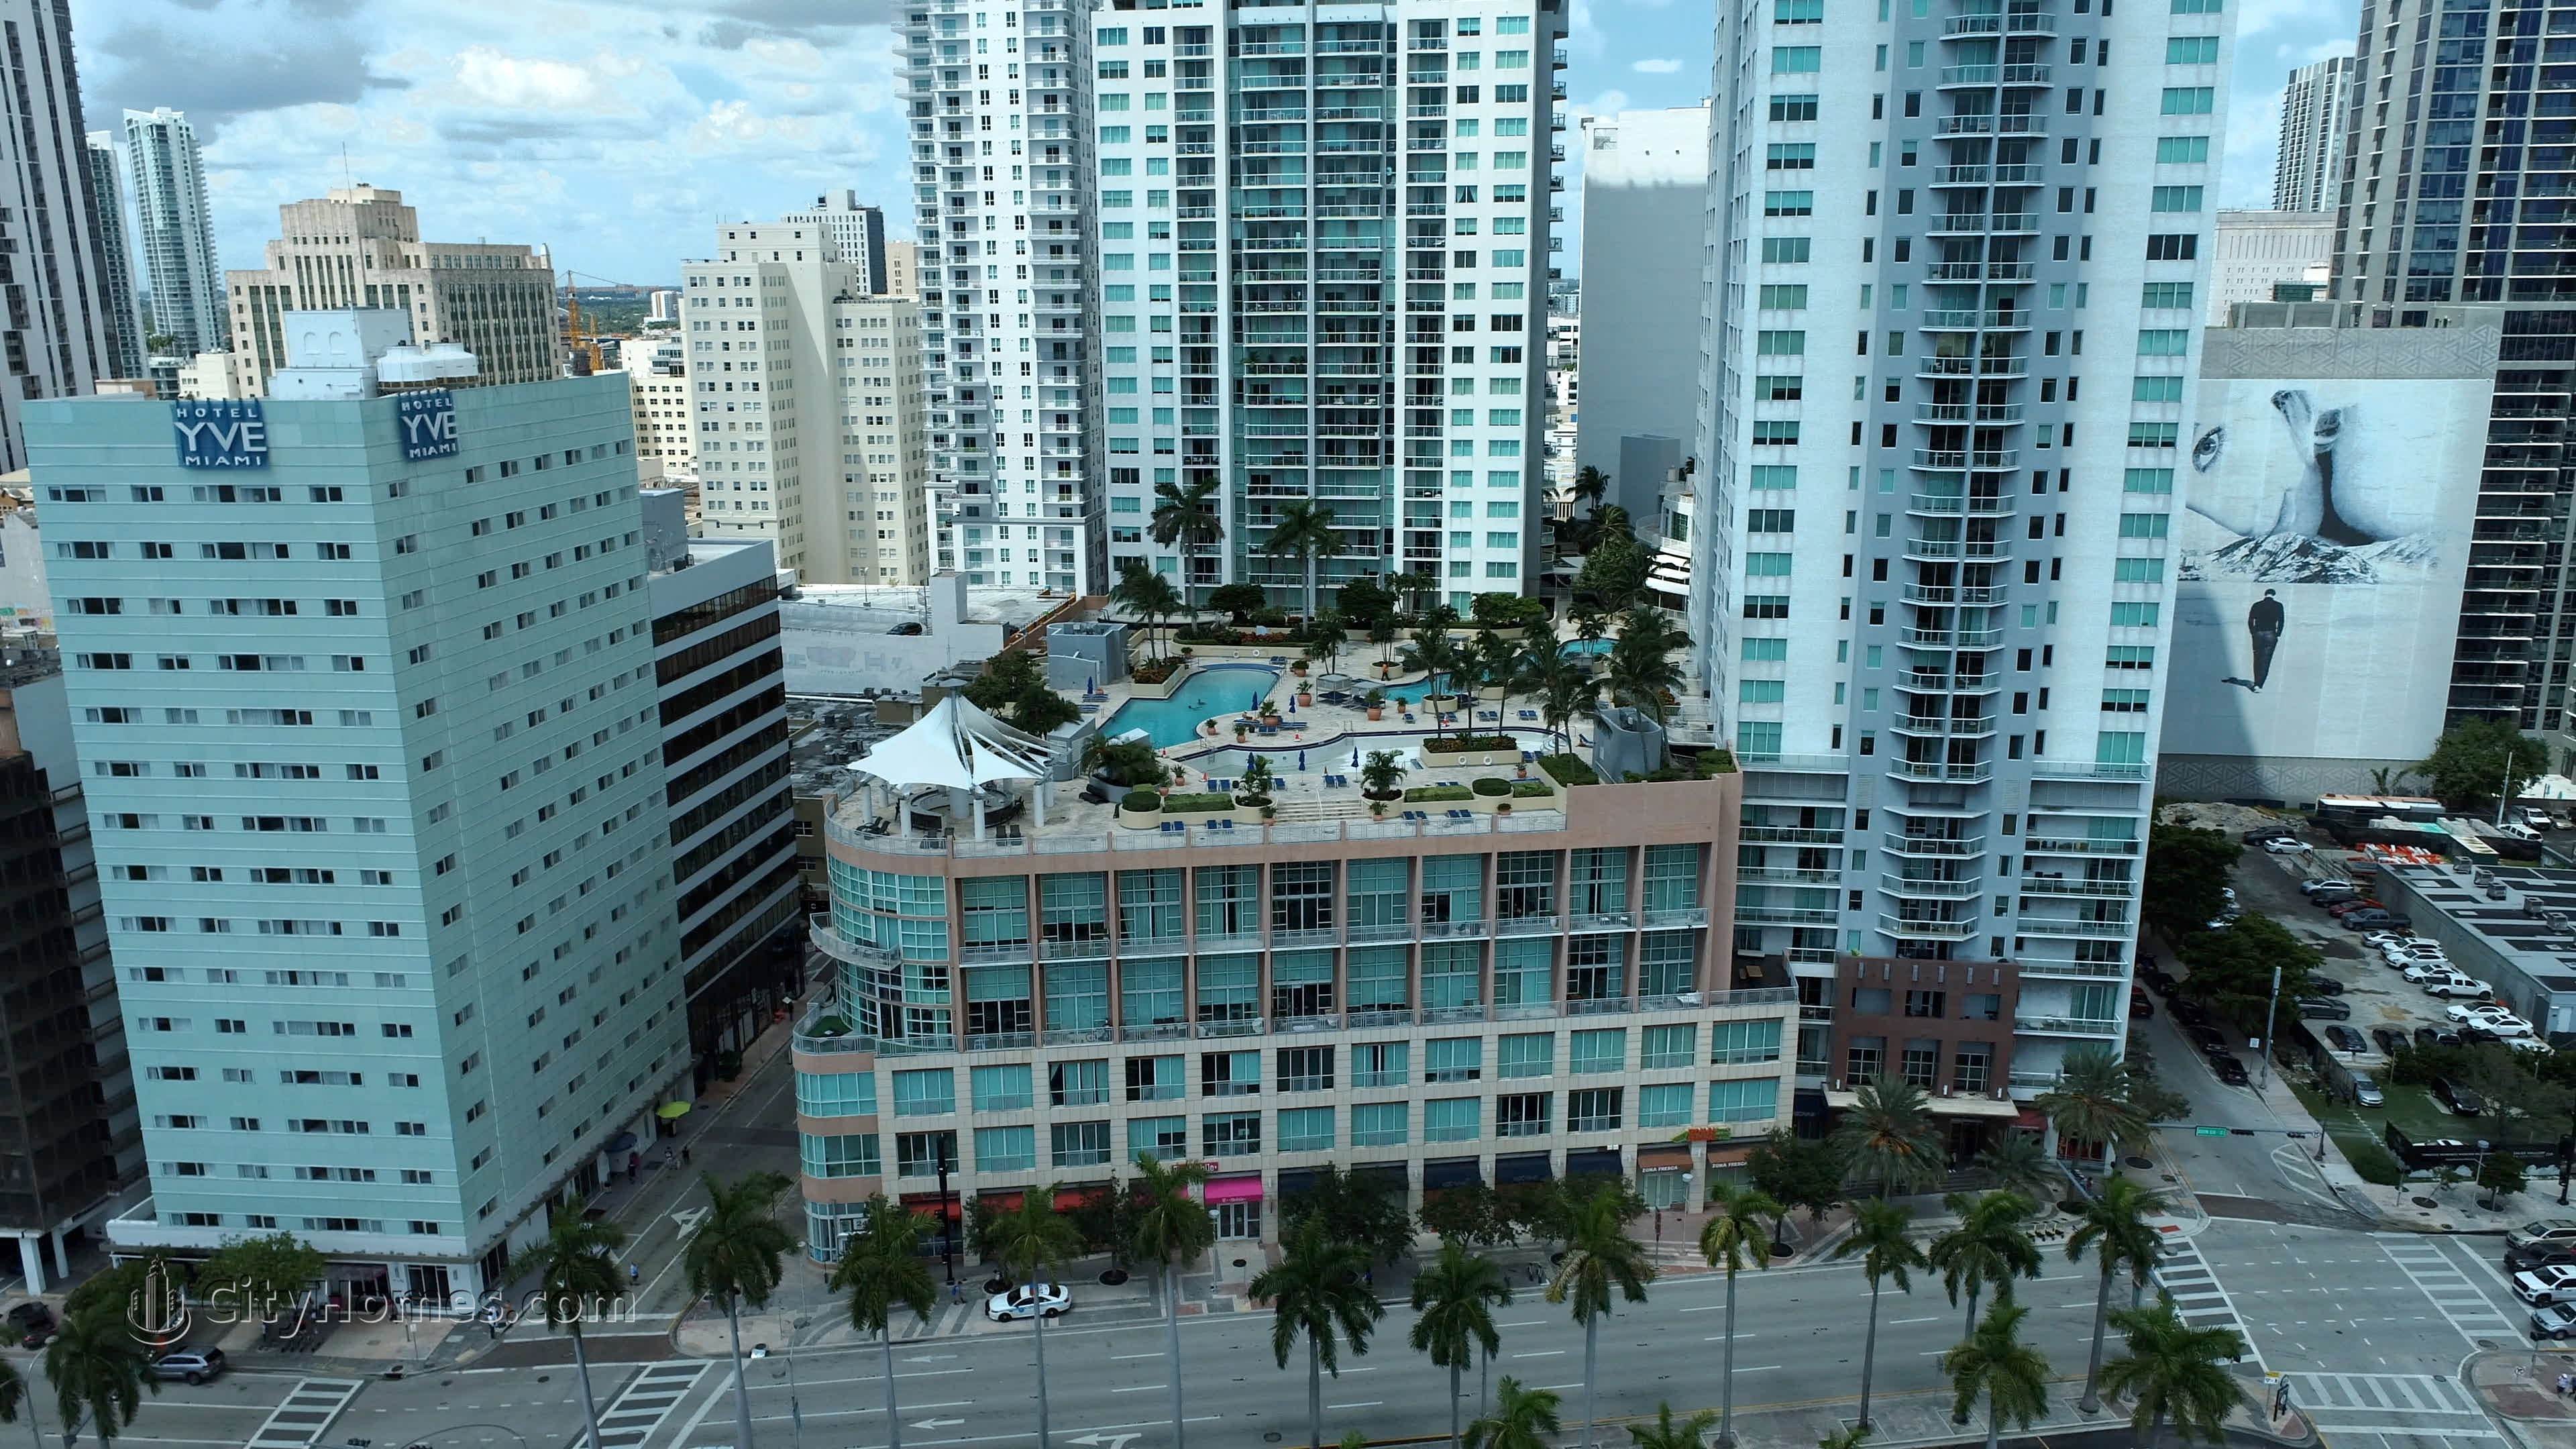 4. Vizcayne South gebouw op 253 NE 2nd Street, Downtown Miami, Miami, FL 33132